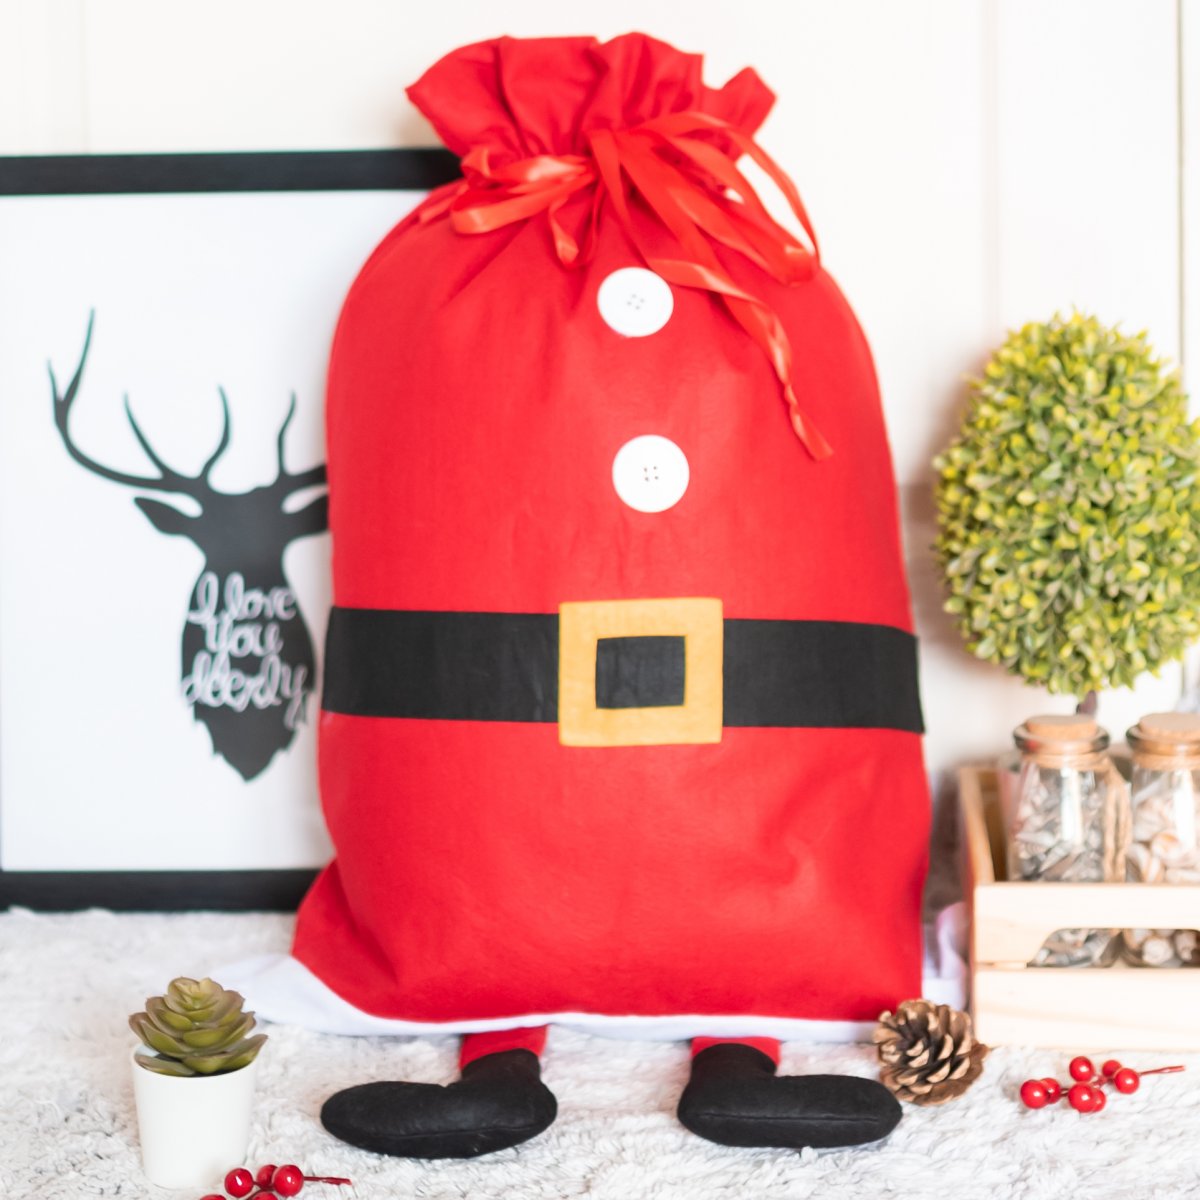 Ho Ho Ho Christmas Gift Box Surprise